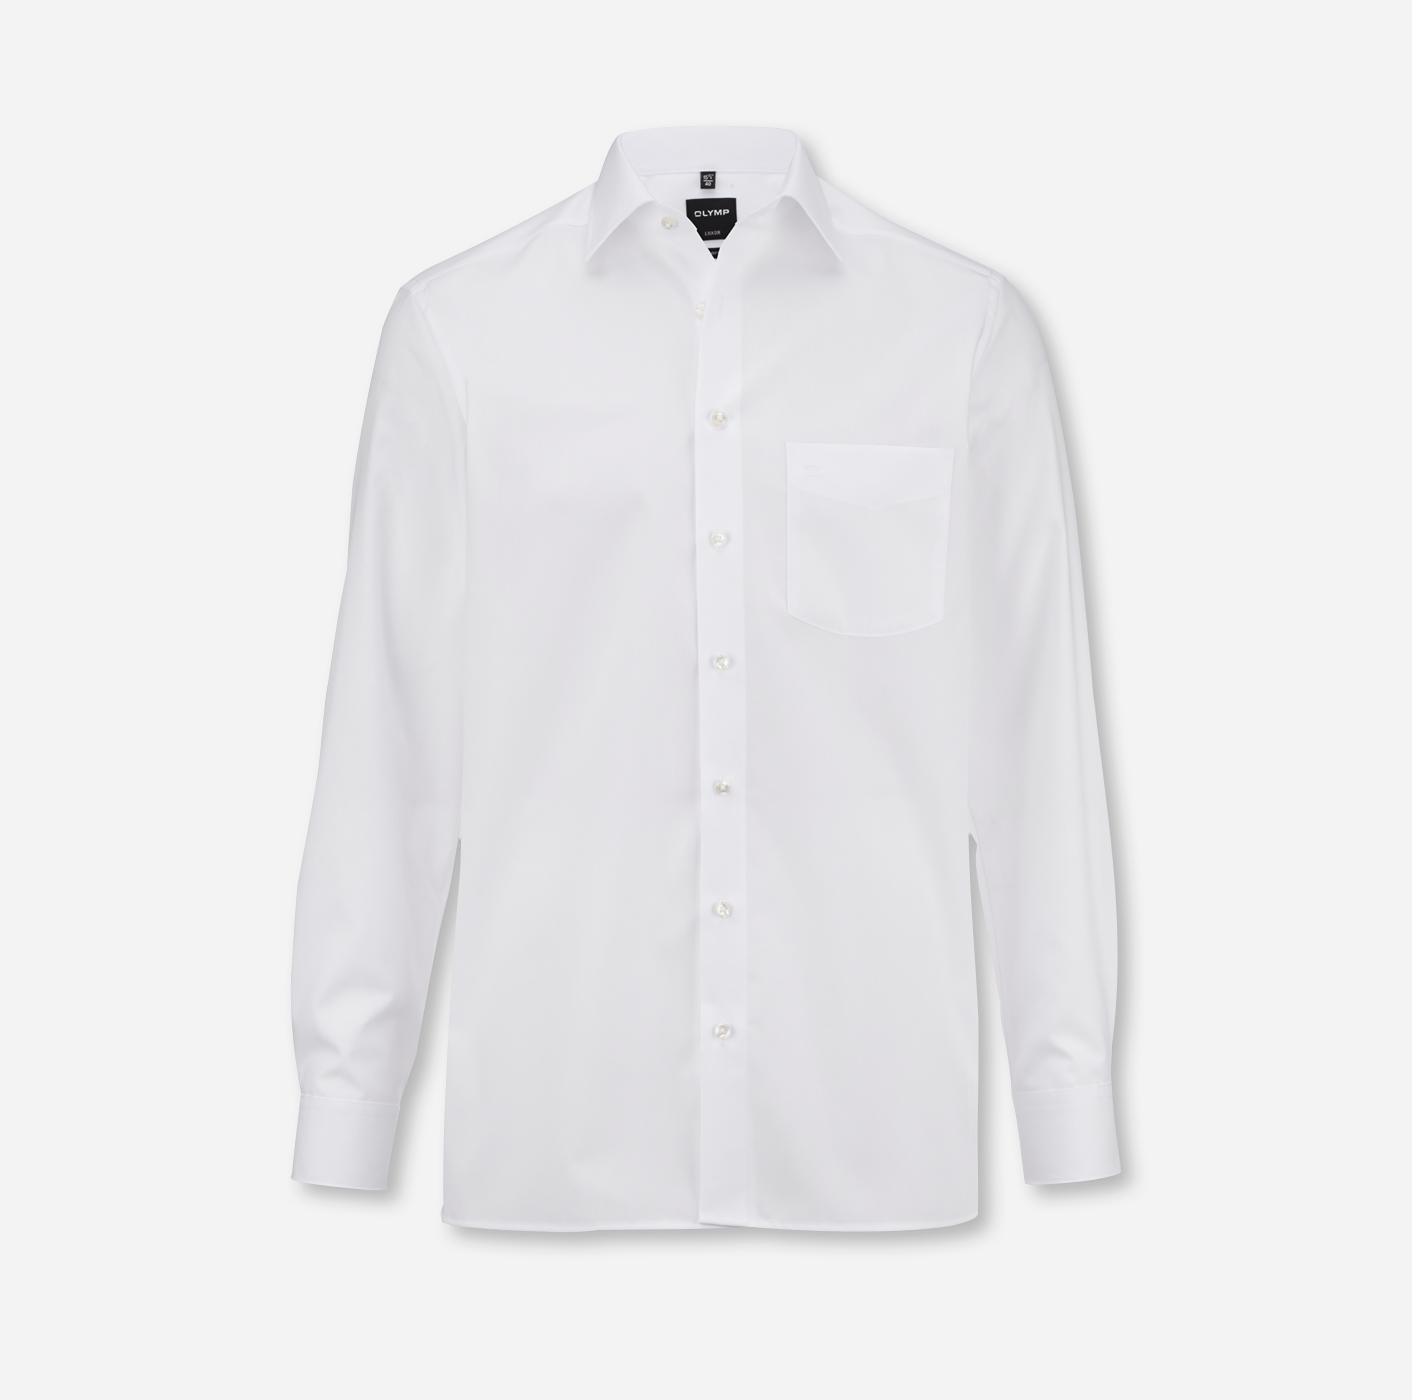 Langarm-Hemden mit Logo besticken: OLYMP Luxor modern fit in weiß